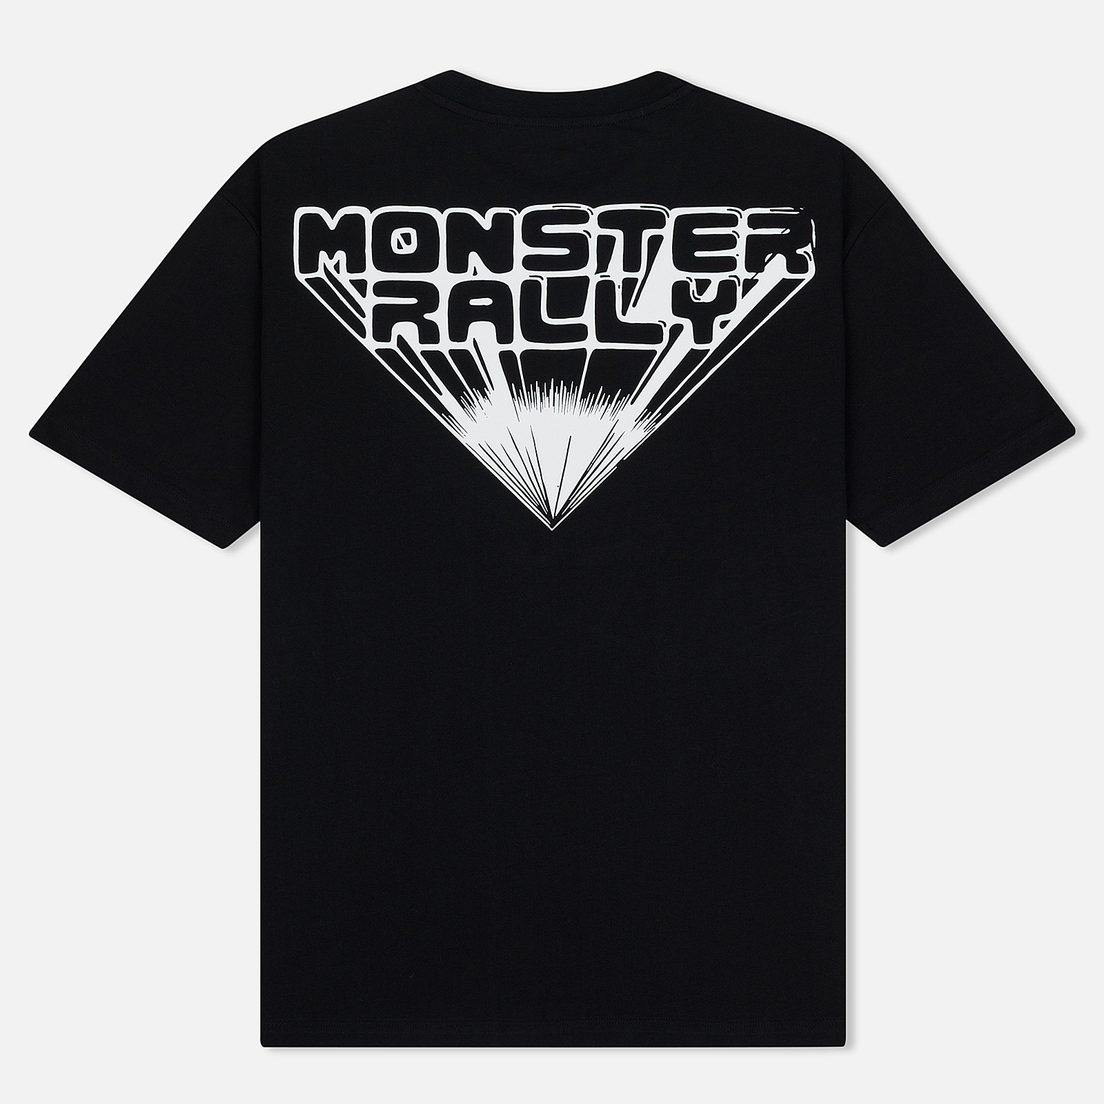 McQ Alexander McQueen Мужская футболка Monster Rally Dropped Shoulder